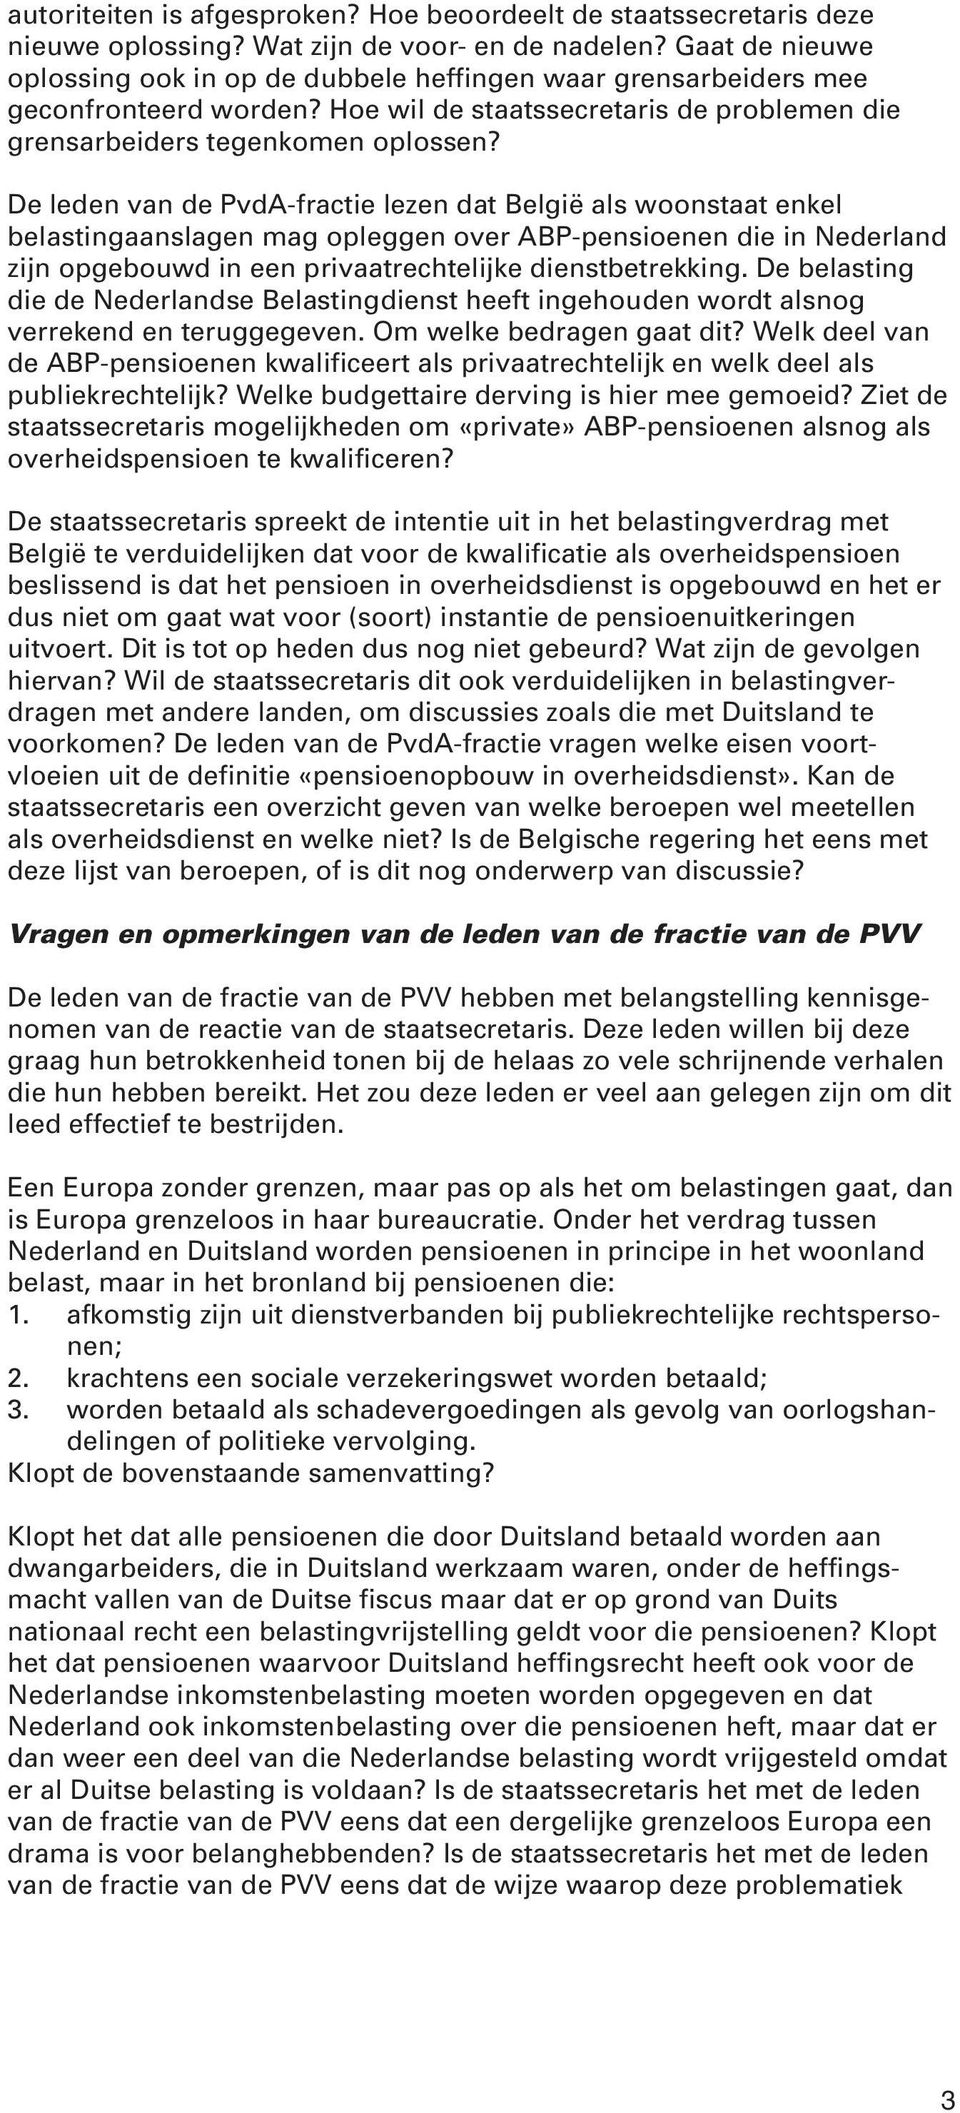 De leden van de PvdA-fractie lezen dat België als woonstaat enkel belastingaanslagen mag opleggen over ABP-pensioenen die in Nederland zijn opgebouwd in een privaatrechtelijke dienstbetrekking.